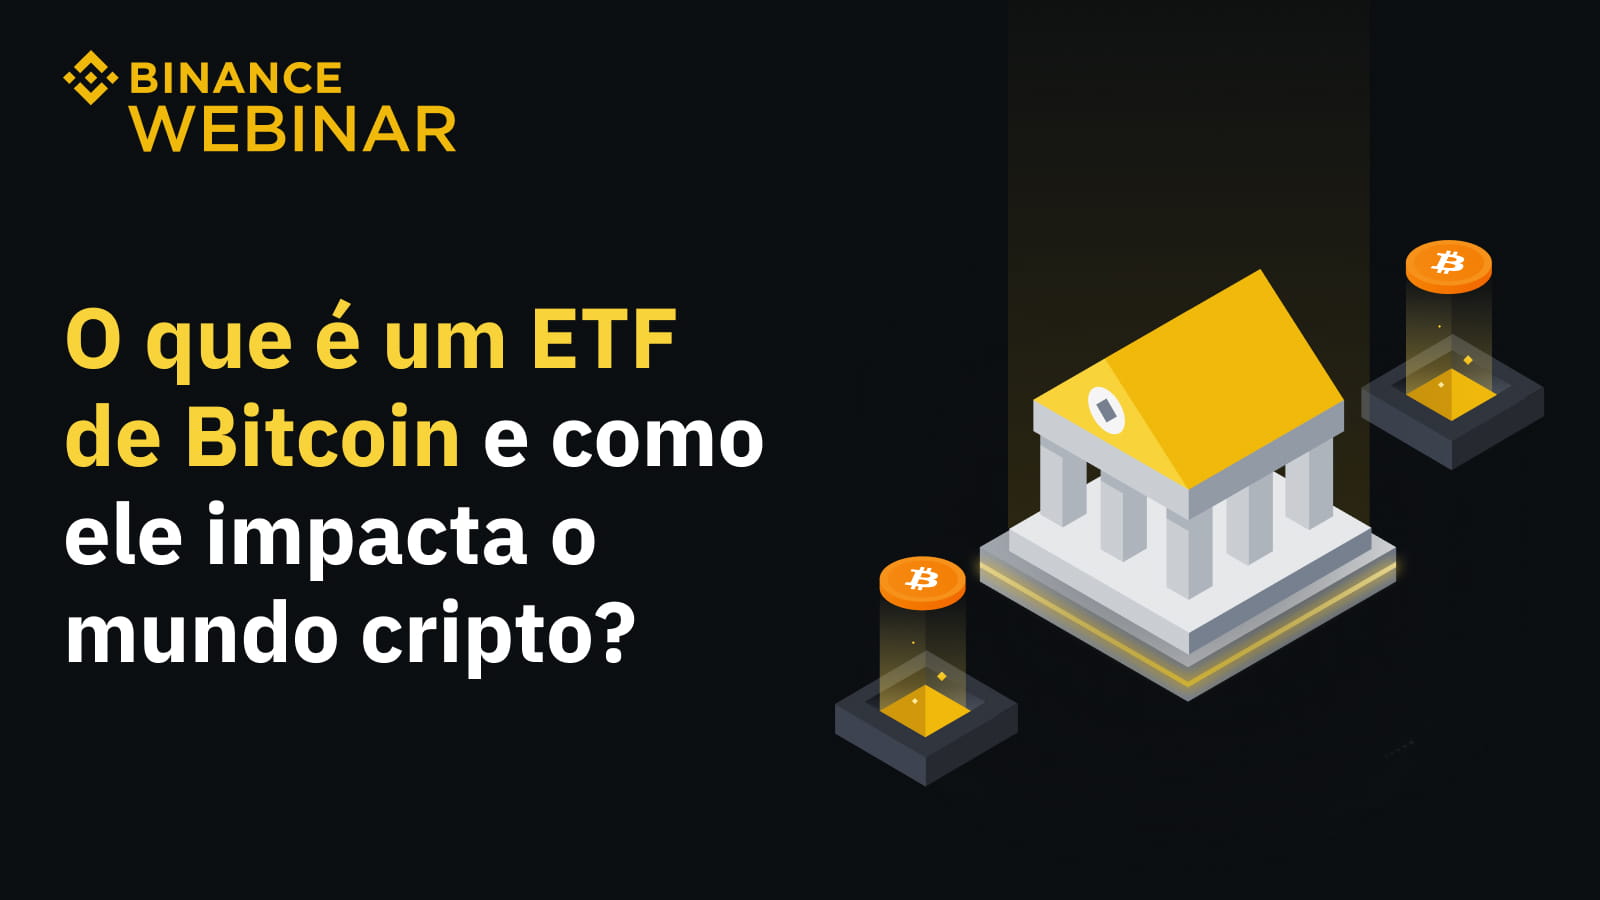 O que é um ETF de Bitcoin e como ele impacta o mundo cripto?